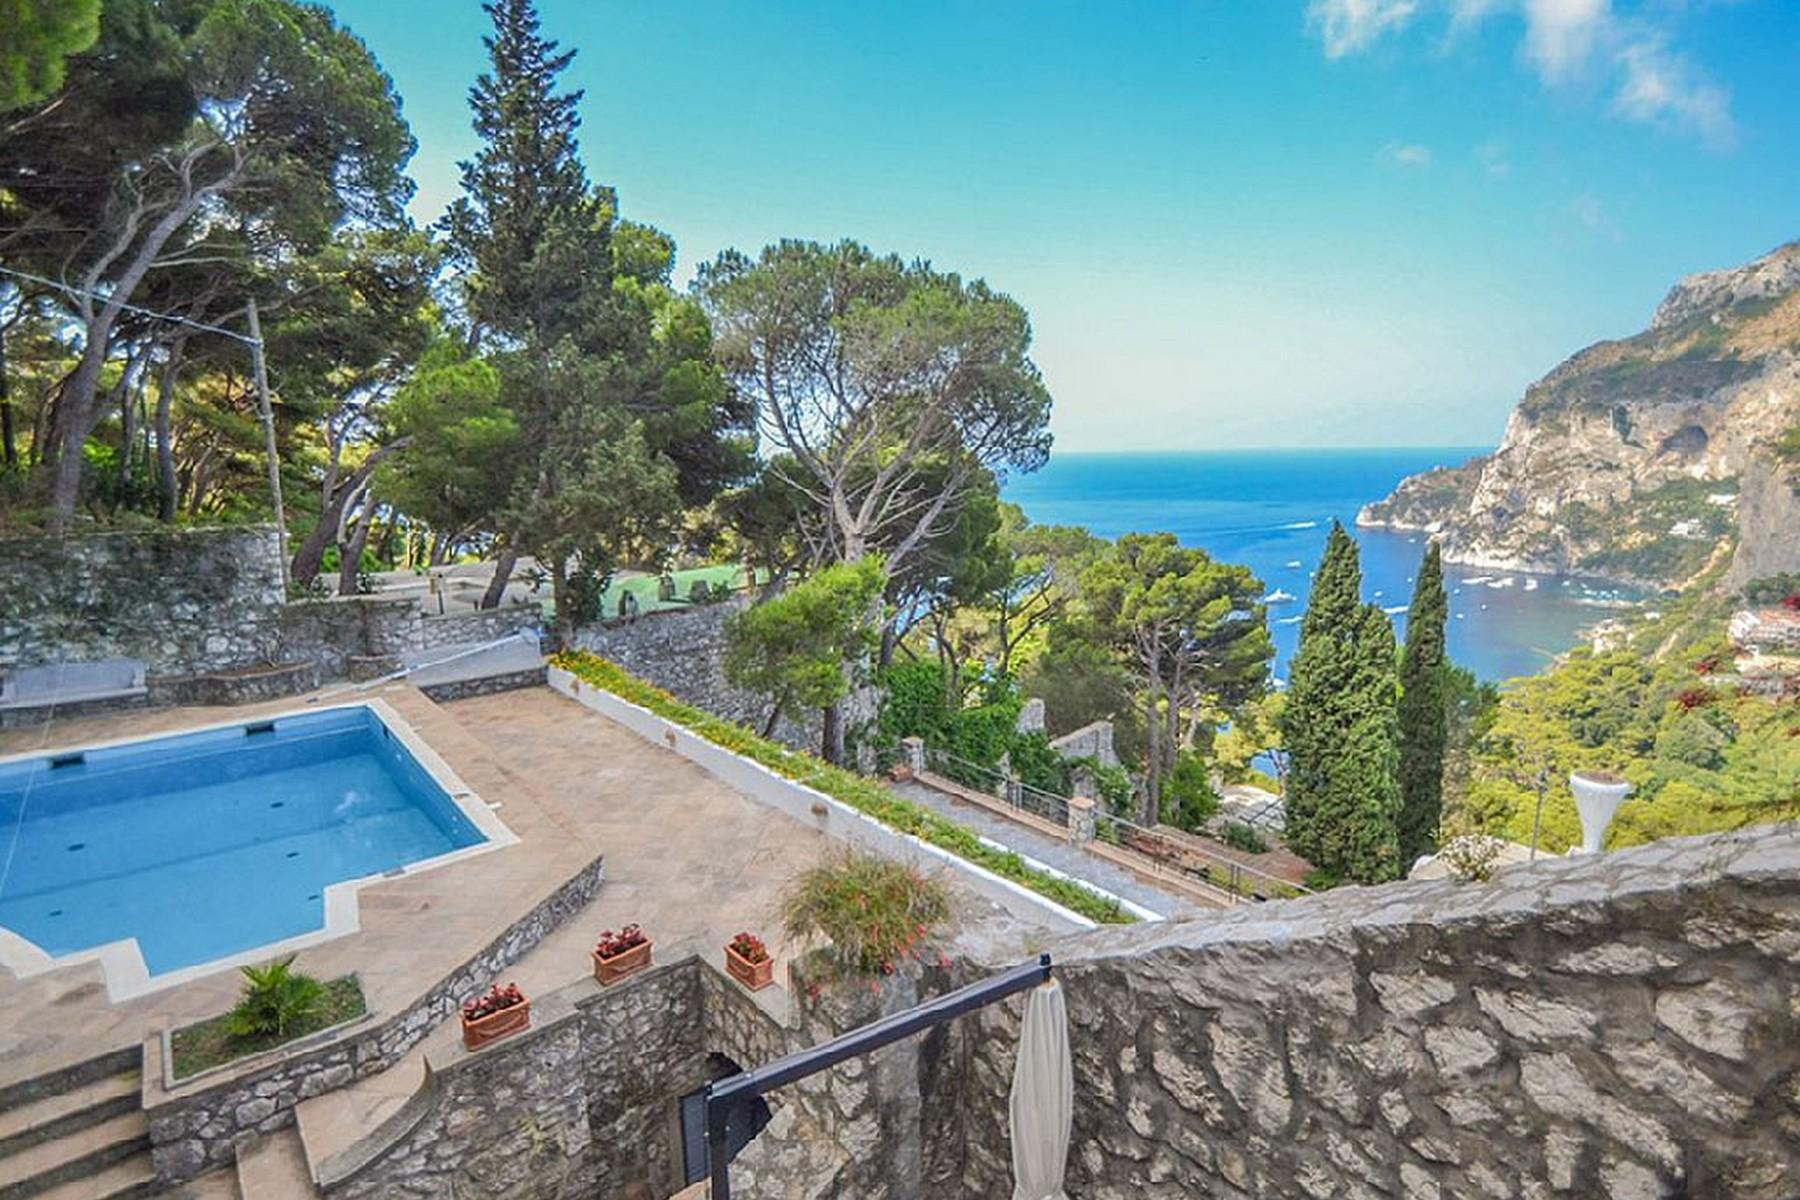 Вилла с панорамными террасами и бассейном в центре легендарного острова Капри, Италия - 1